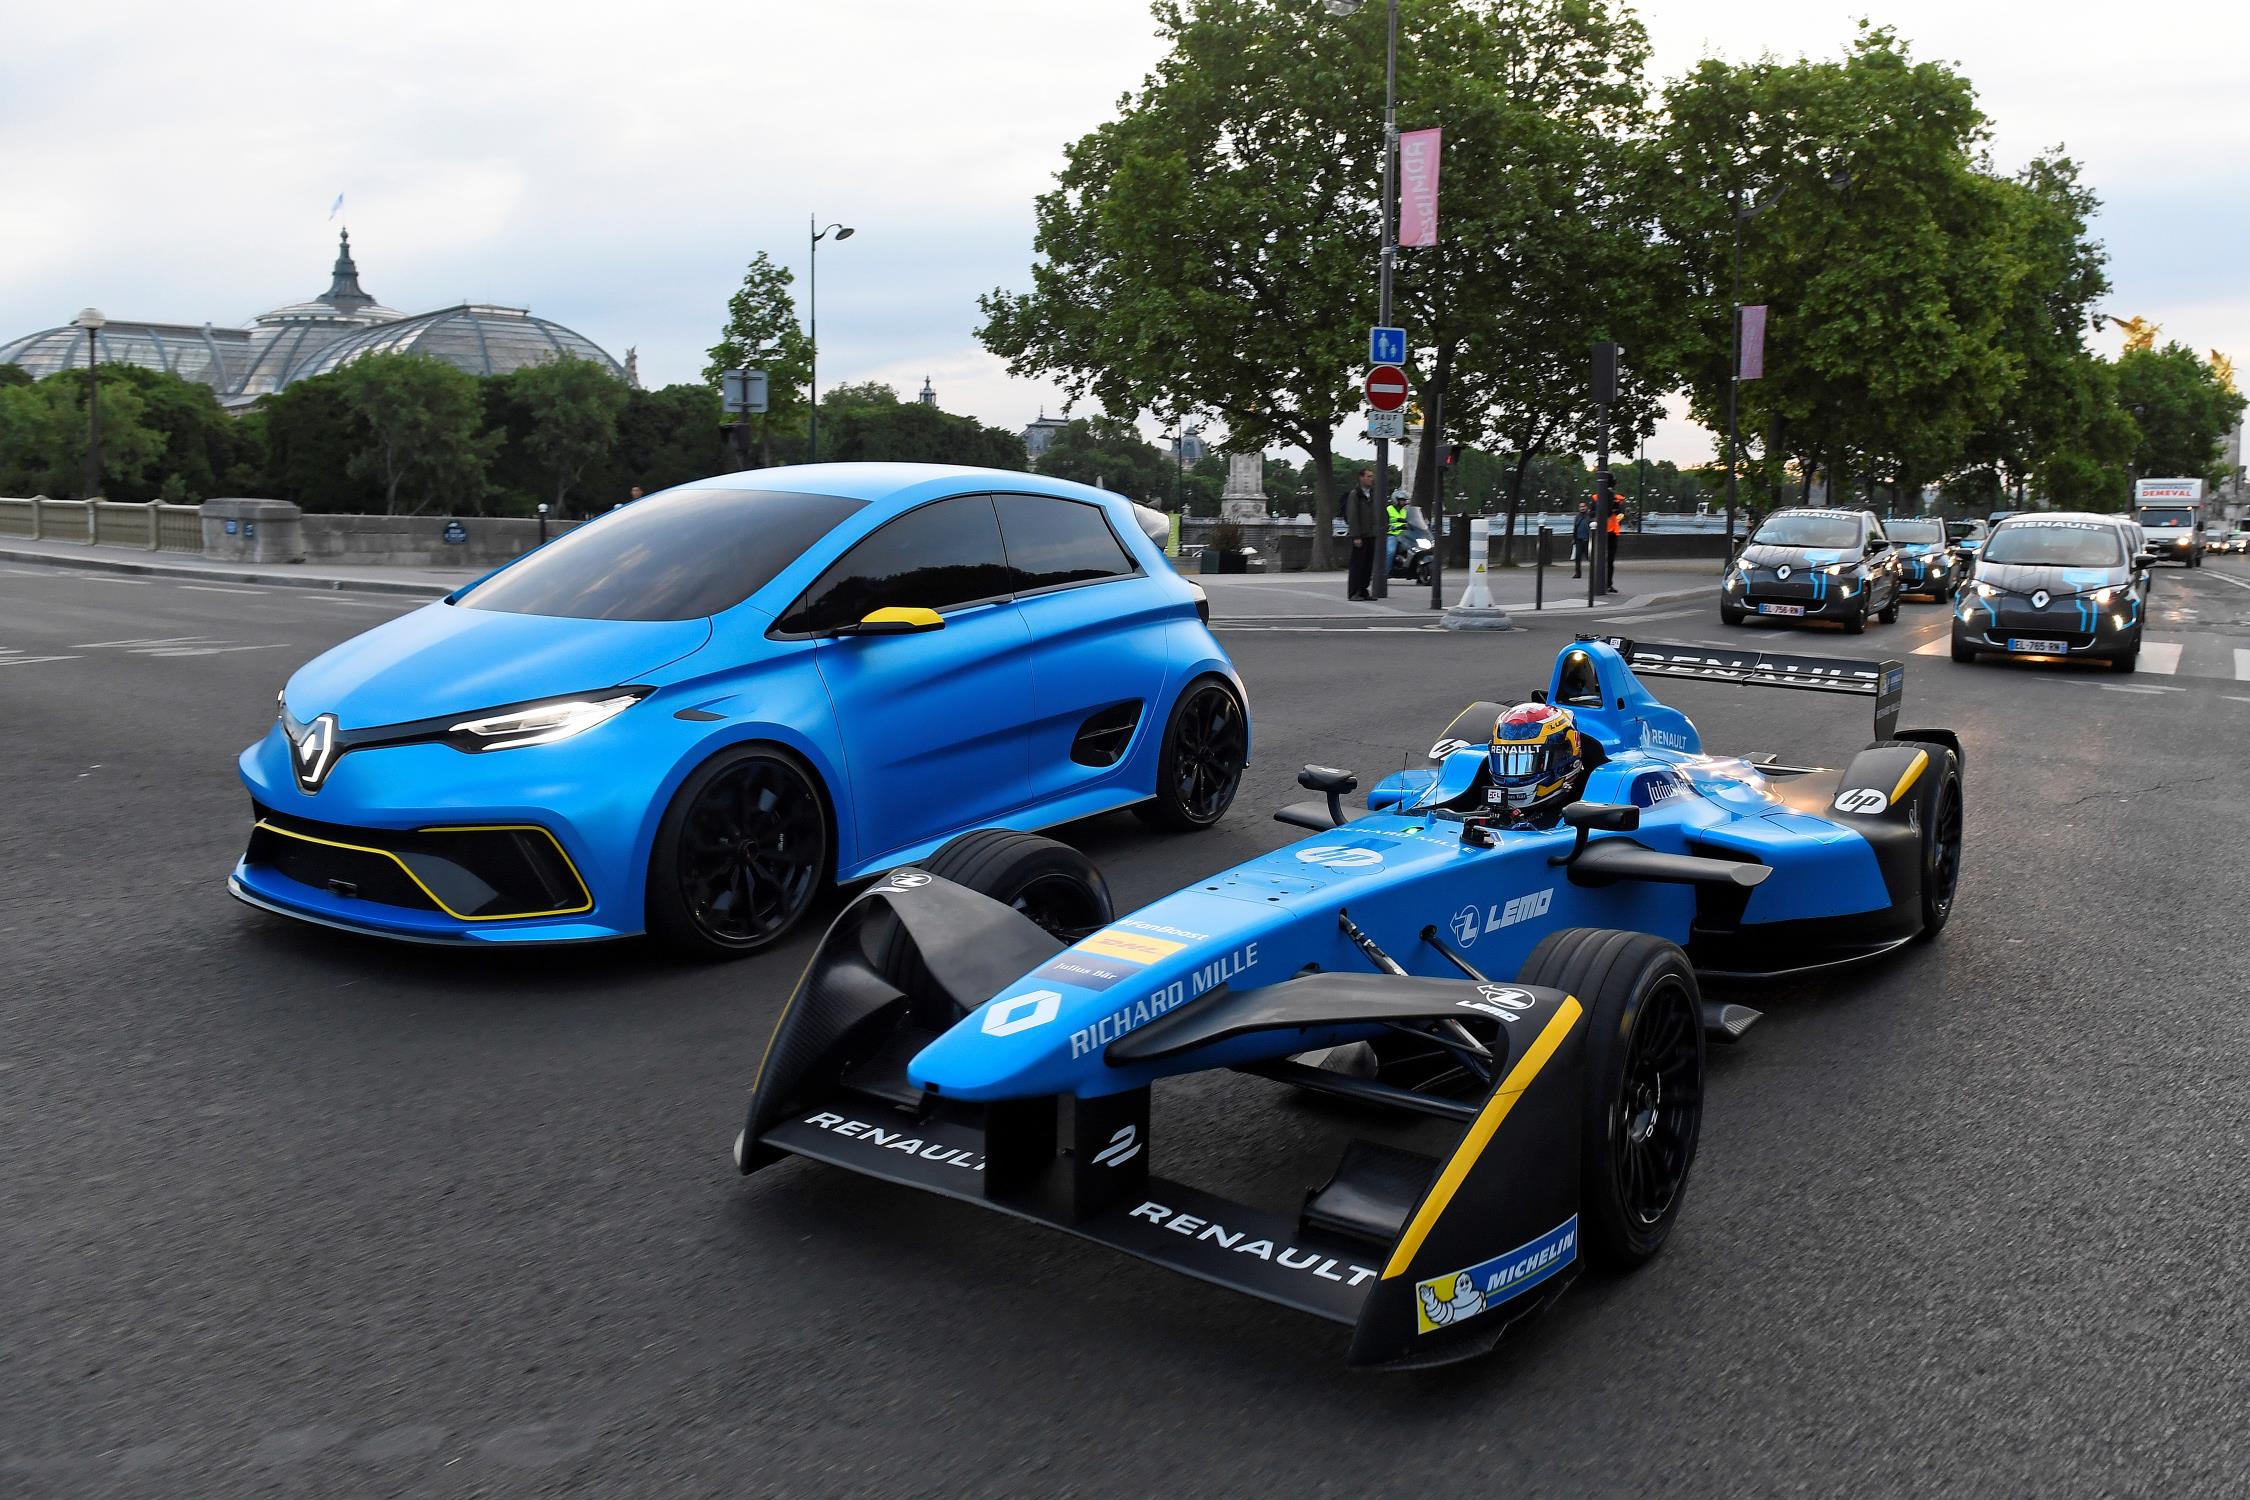 Електрическият Renault Zoe e-sport concept до състезателния болид Renault Formula E